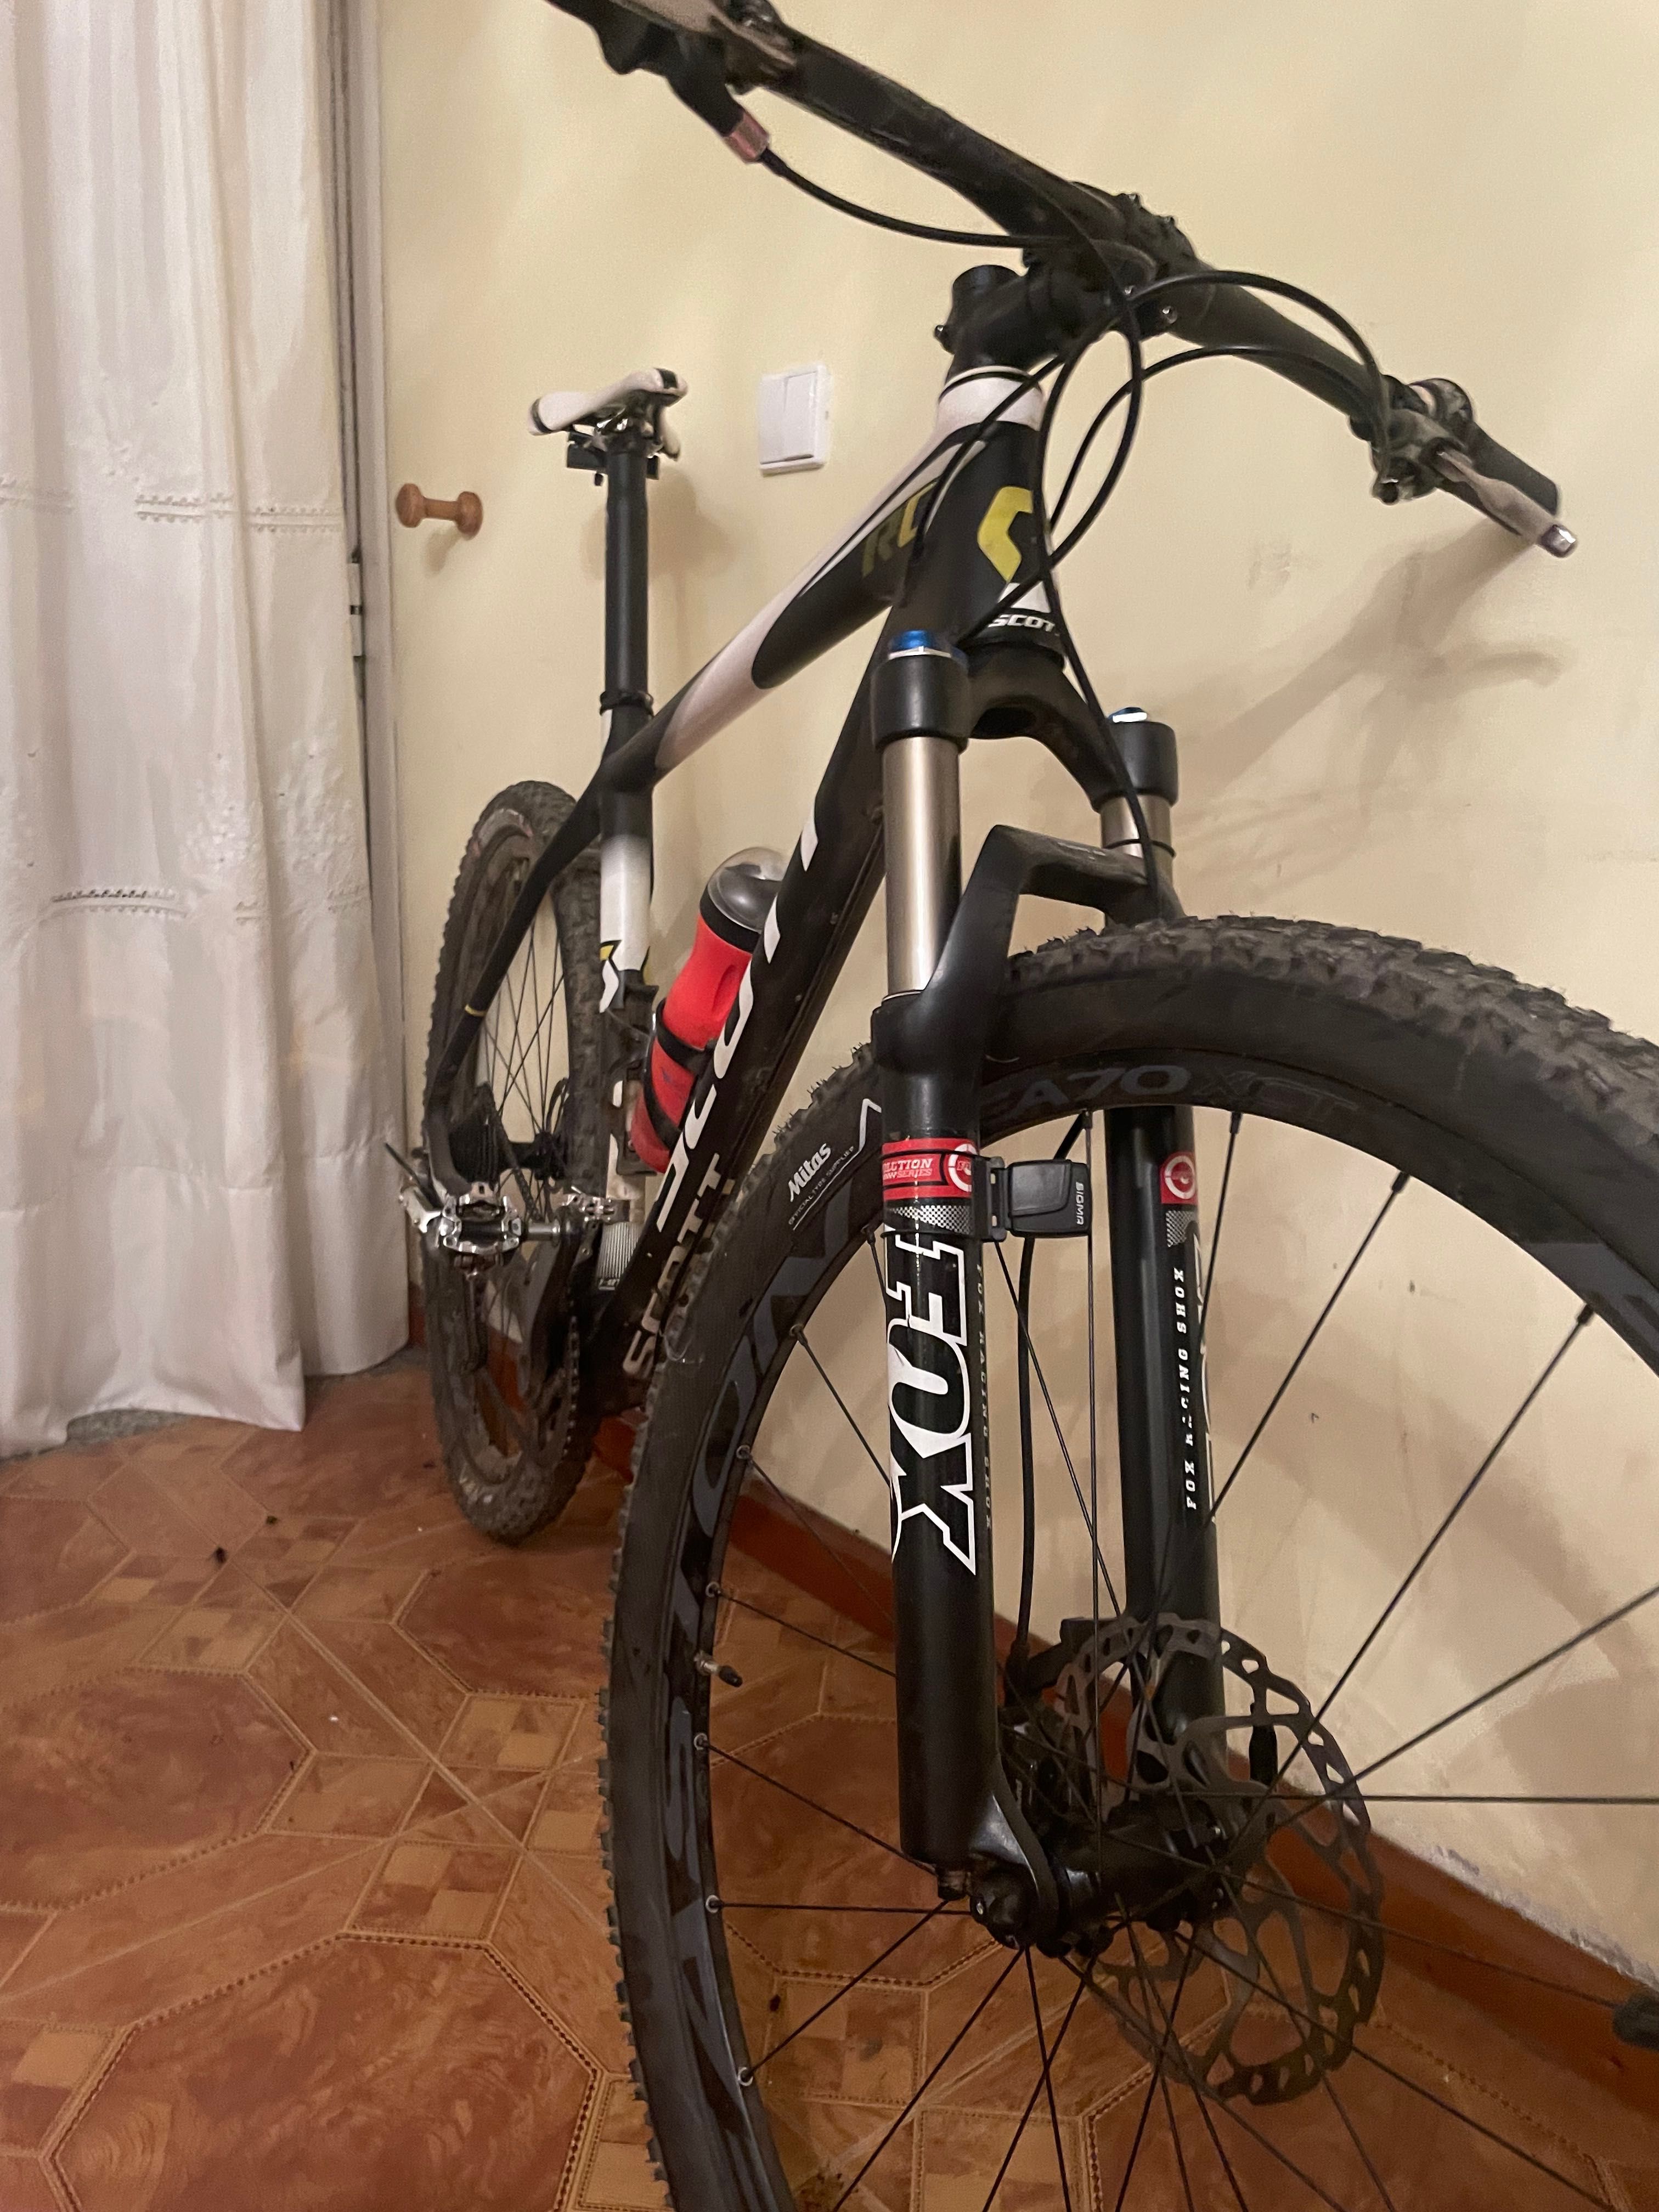 Bicicleta Scott Rc em carbono com suspensão fox e com conta km